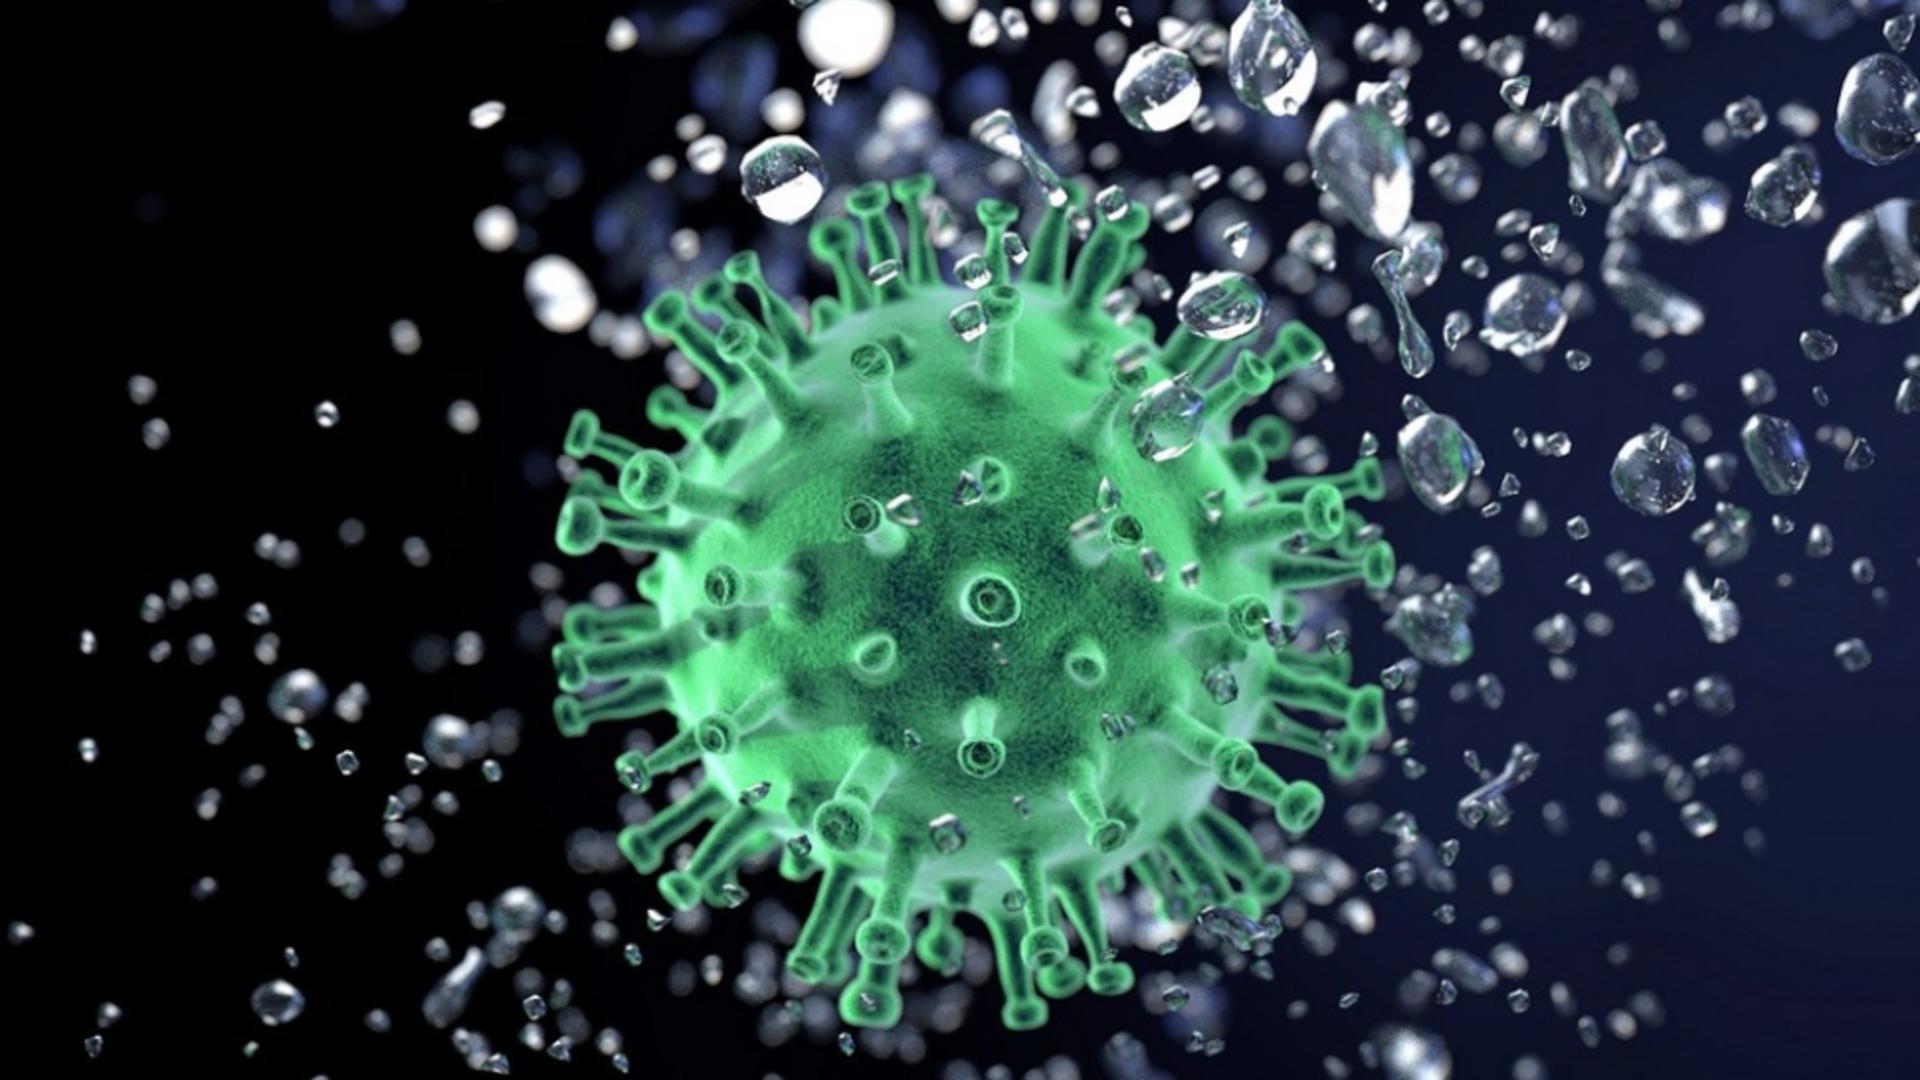 Bilant coronavirus